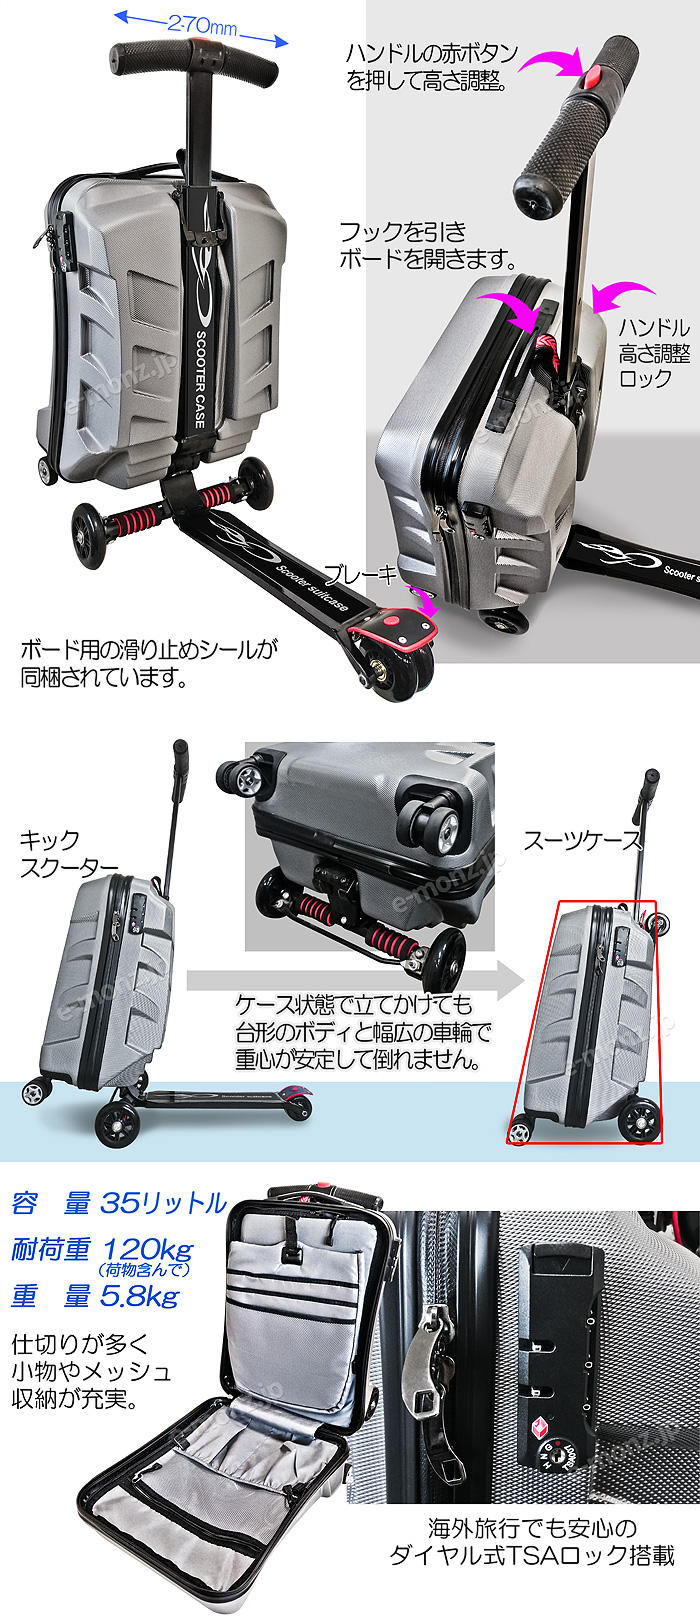 スーツケースがスクーターに変身するチェンジ スケーター【SUITCASE SCOOTER】シルバー